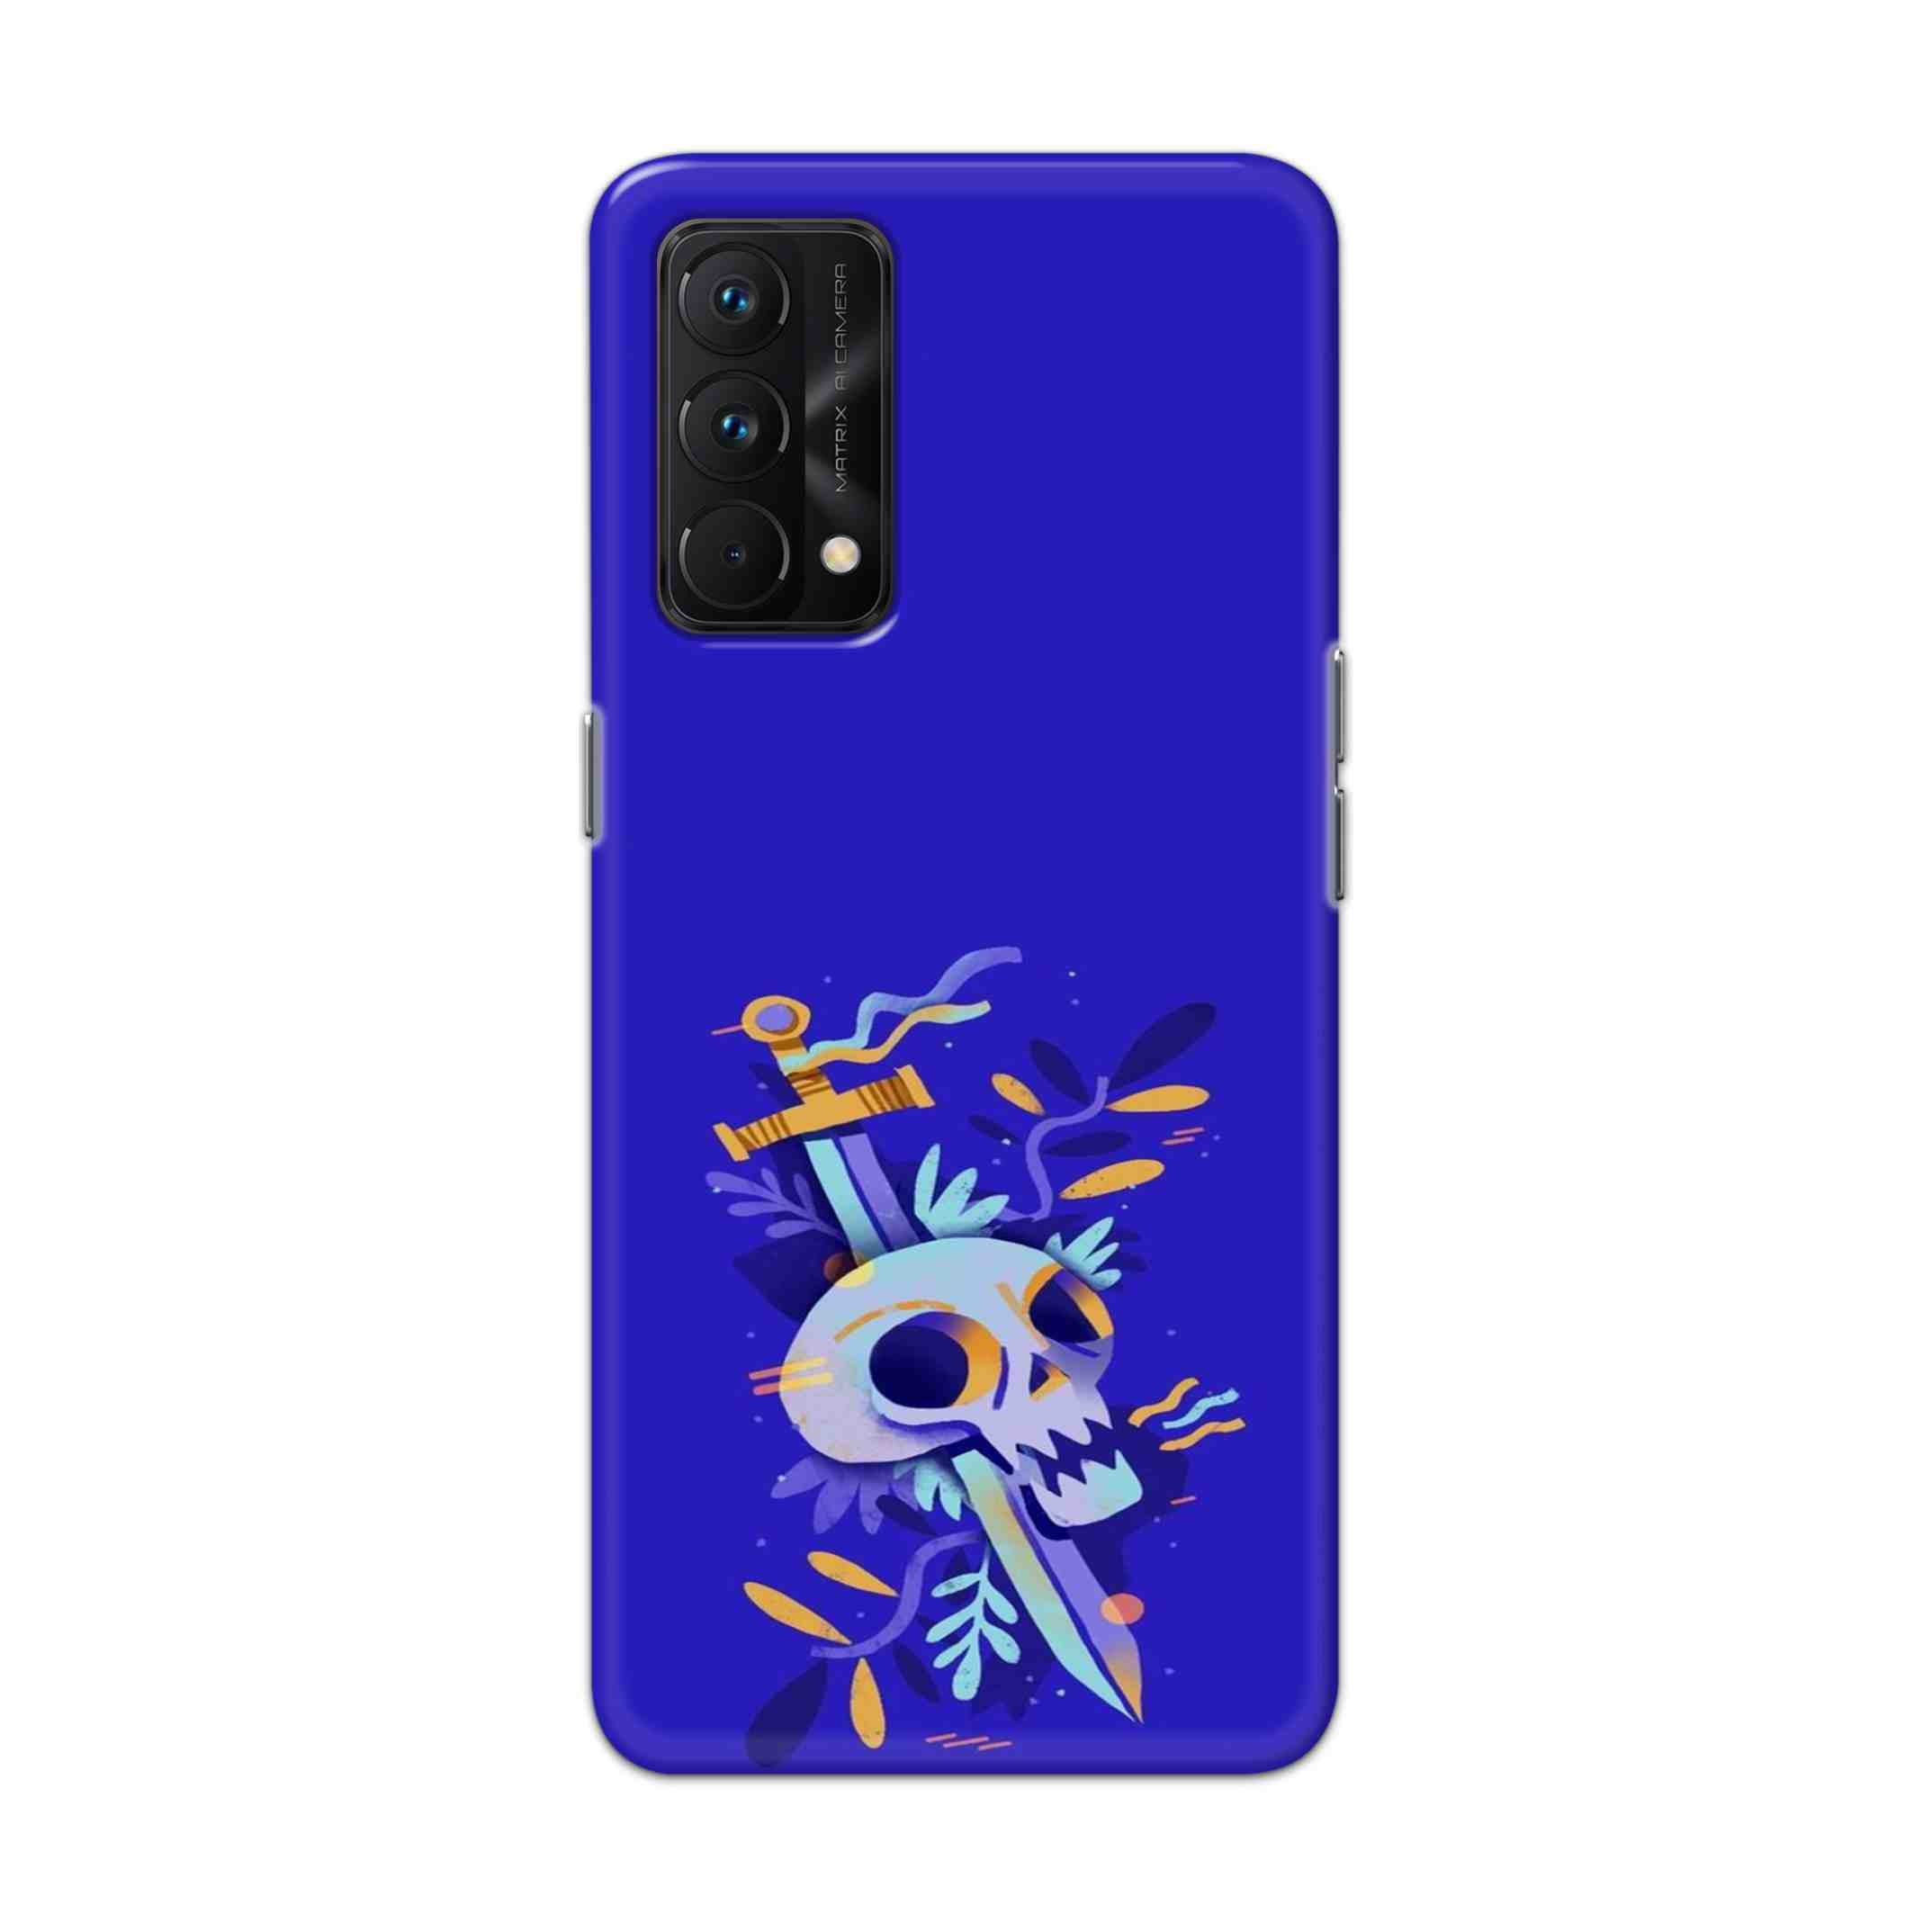 Buy Blue Skull Hard Back Mobile Phone Case Cover For Realme GT Master Online